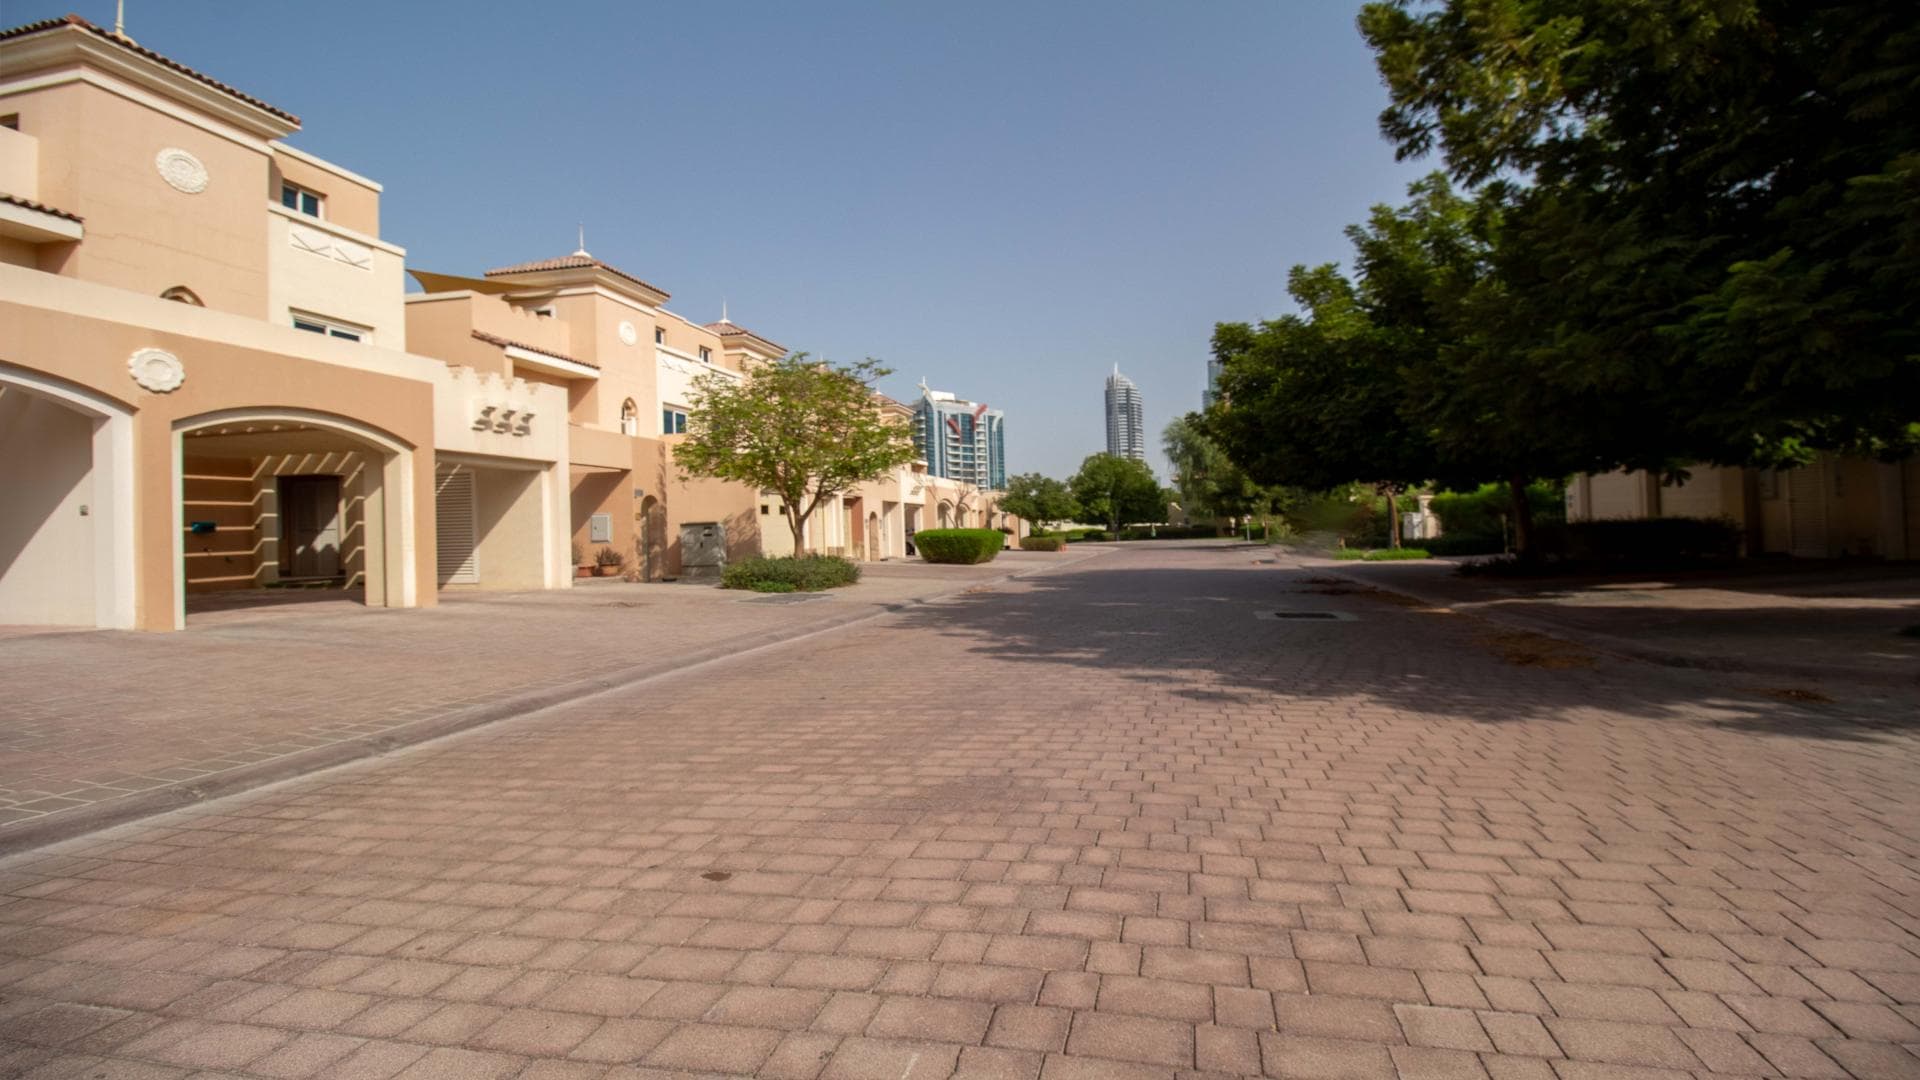 4 Bedroom Villa For Rent Al Thamam 35 Lp36674 20477af166b56000.jpg